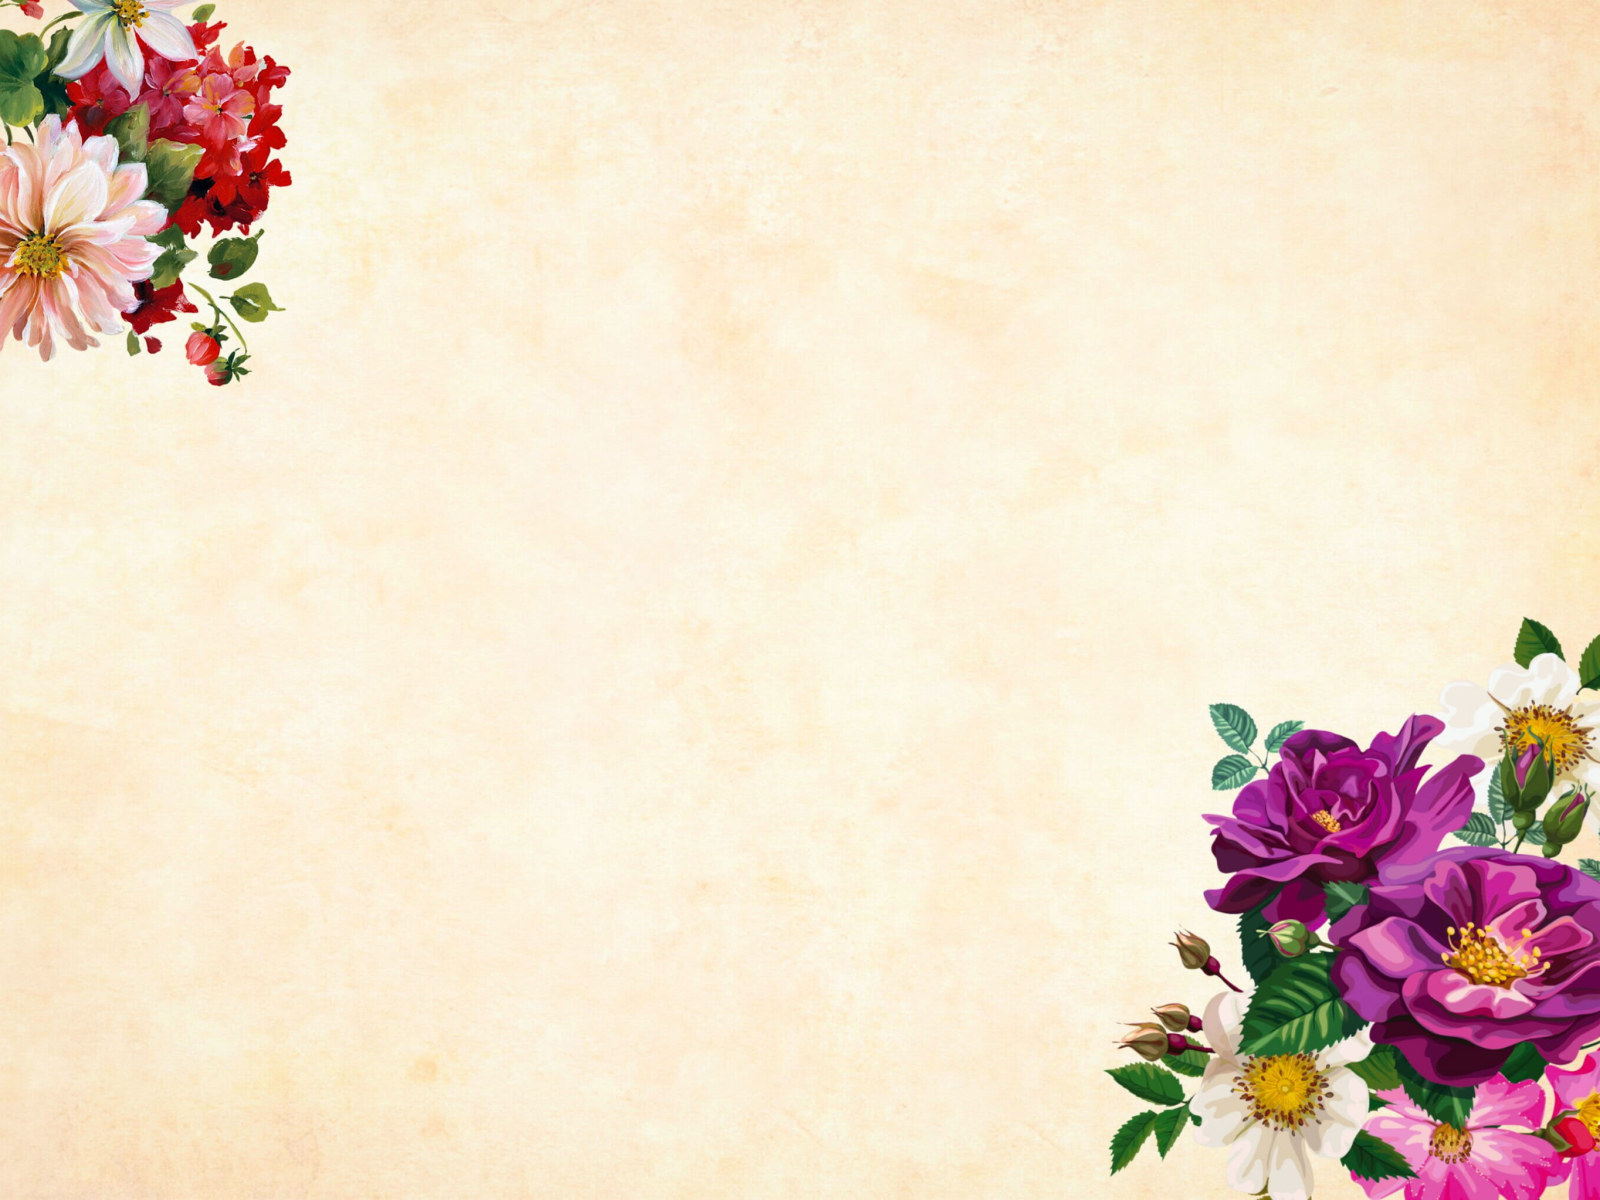 Vintage flower wallpaper, background, watercolor, floral, border, garden • Wallpaper For You HD Wallpaper For Desktop & Mobile